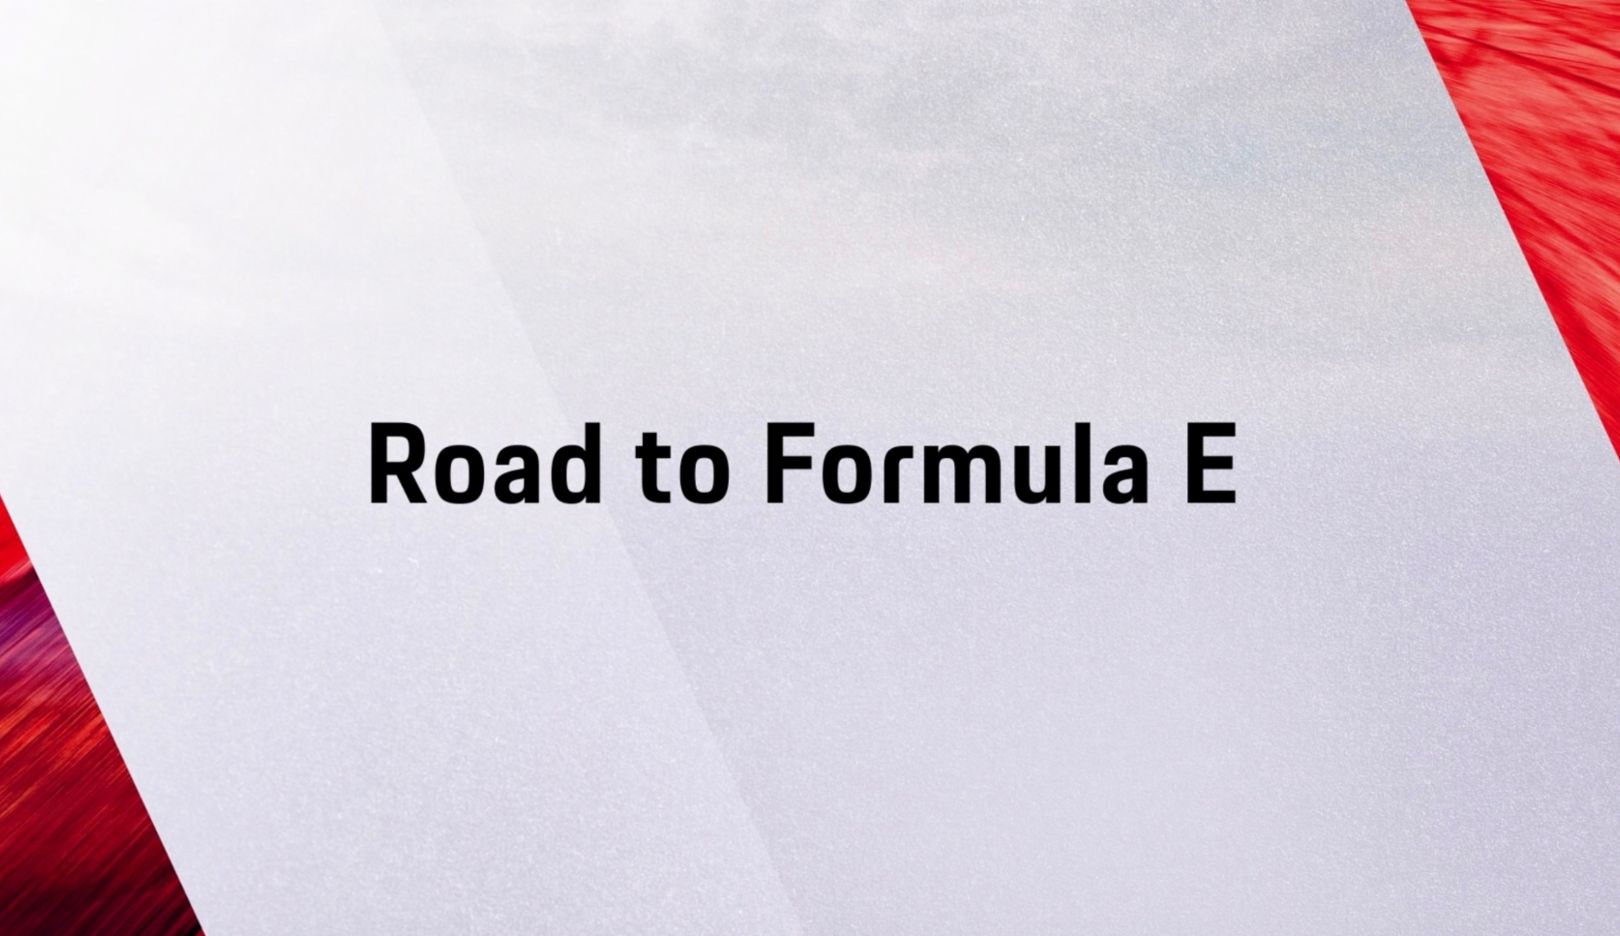 El "Camino hacia la Fórmula E" en una animación